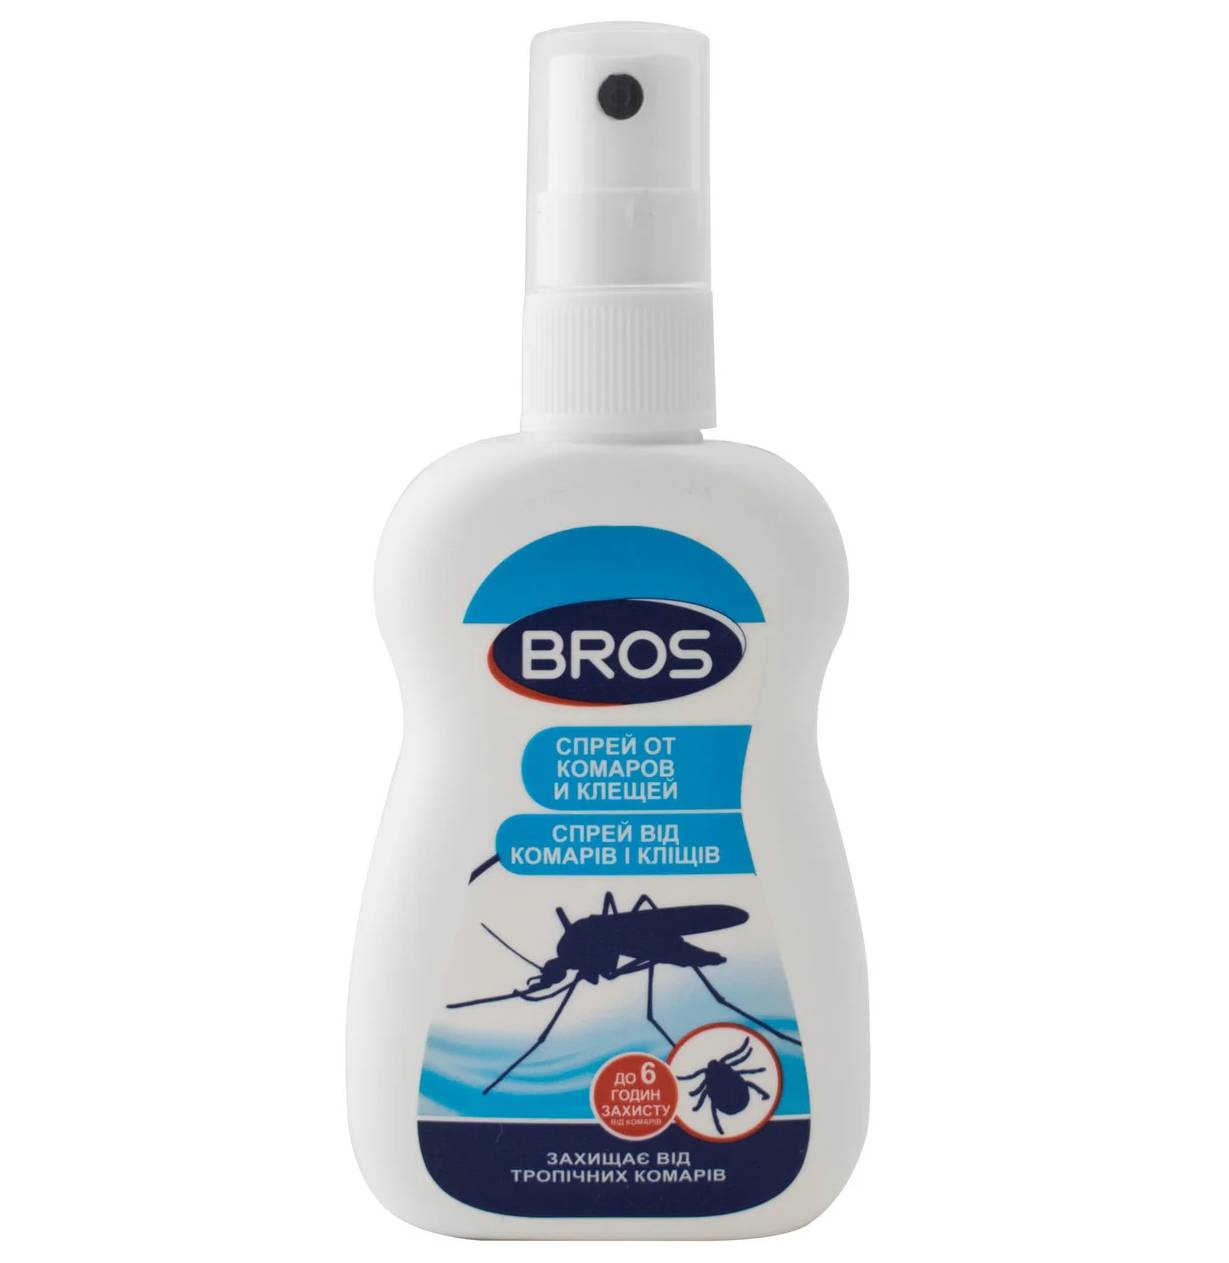 Средство репеллентое BROS спрей от комаров и клещей 50 мл MKU-61248 (SK000806)